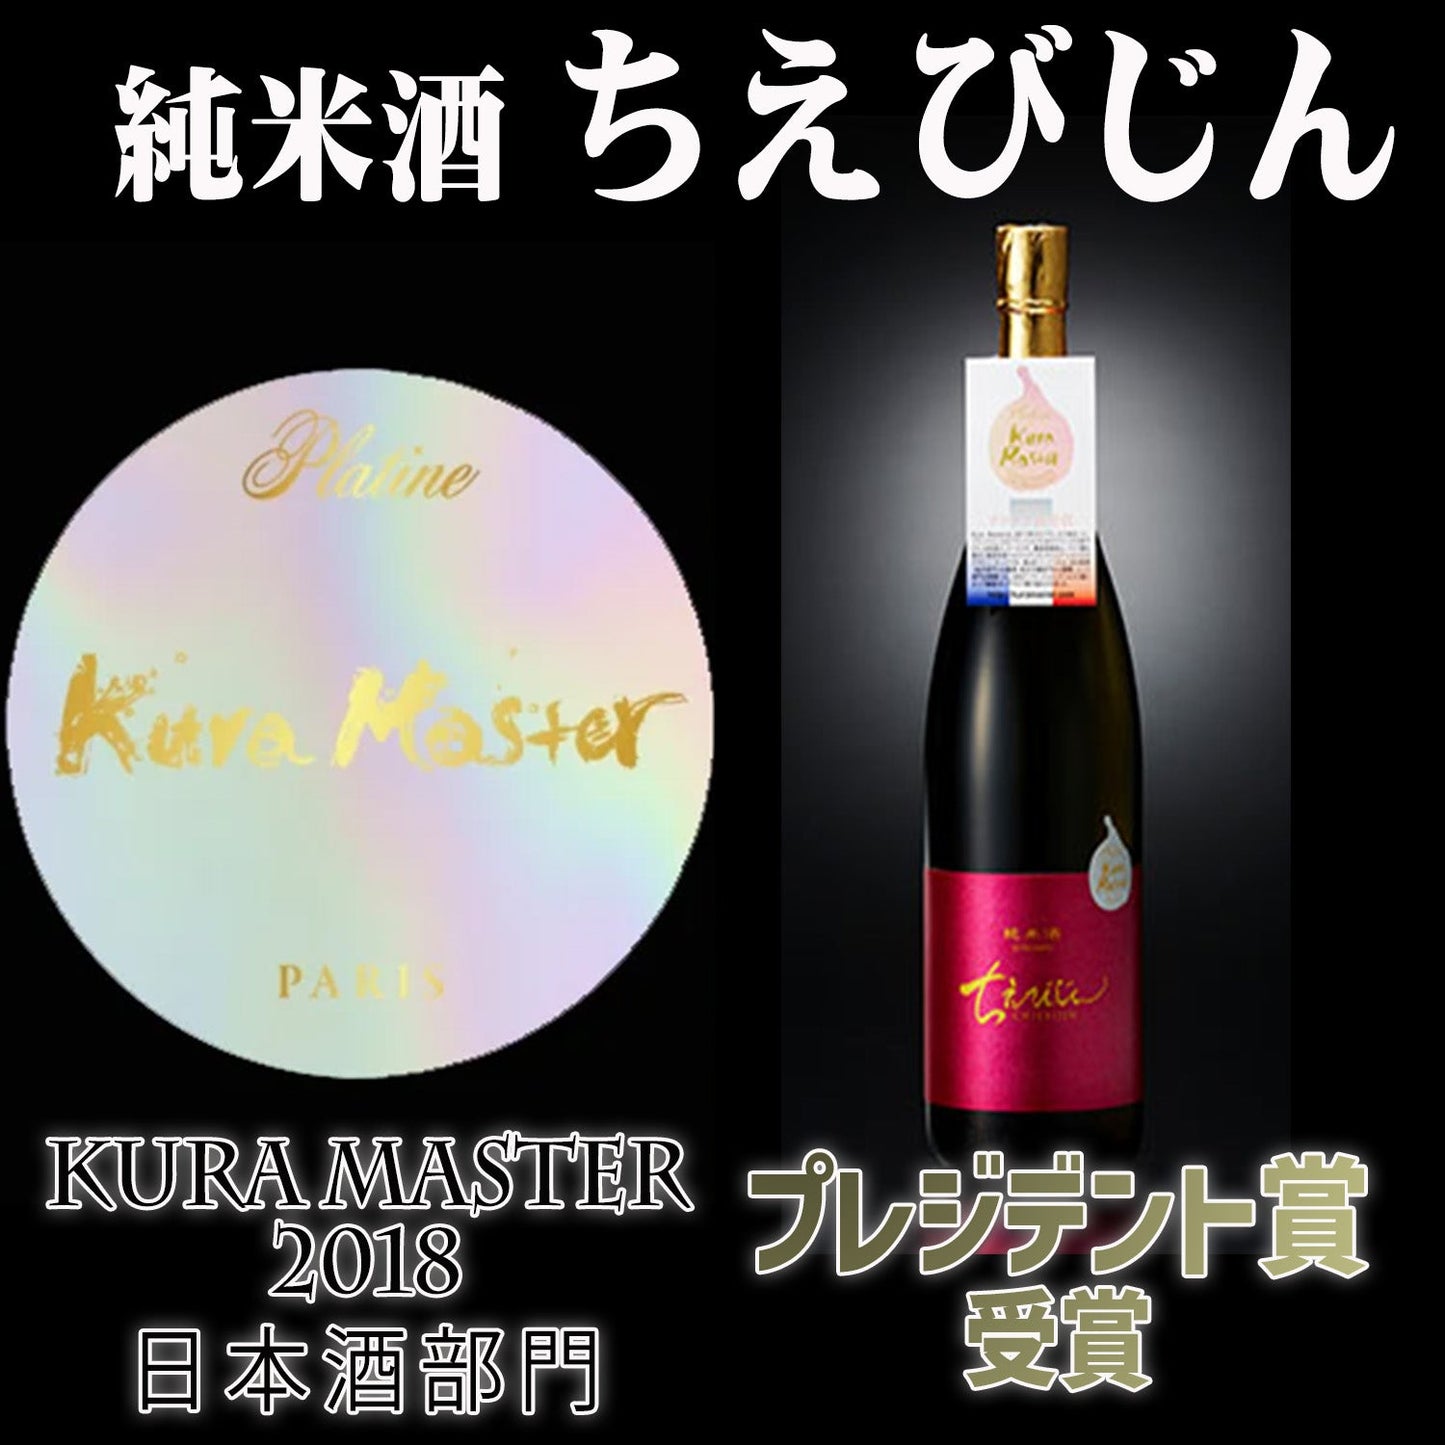 「純米酒ちえびじん」と「麦焼酎喜納屋(きのや)」Kura Master受賞セット